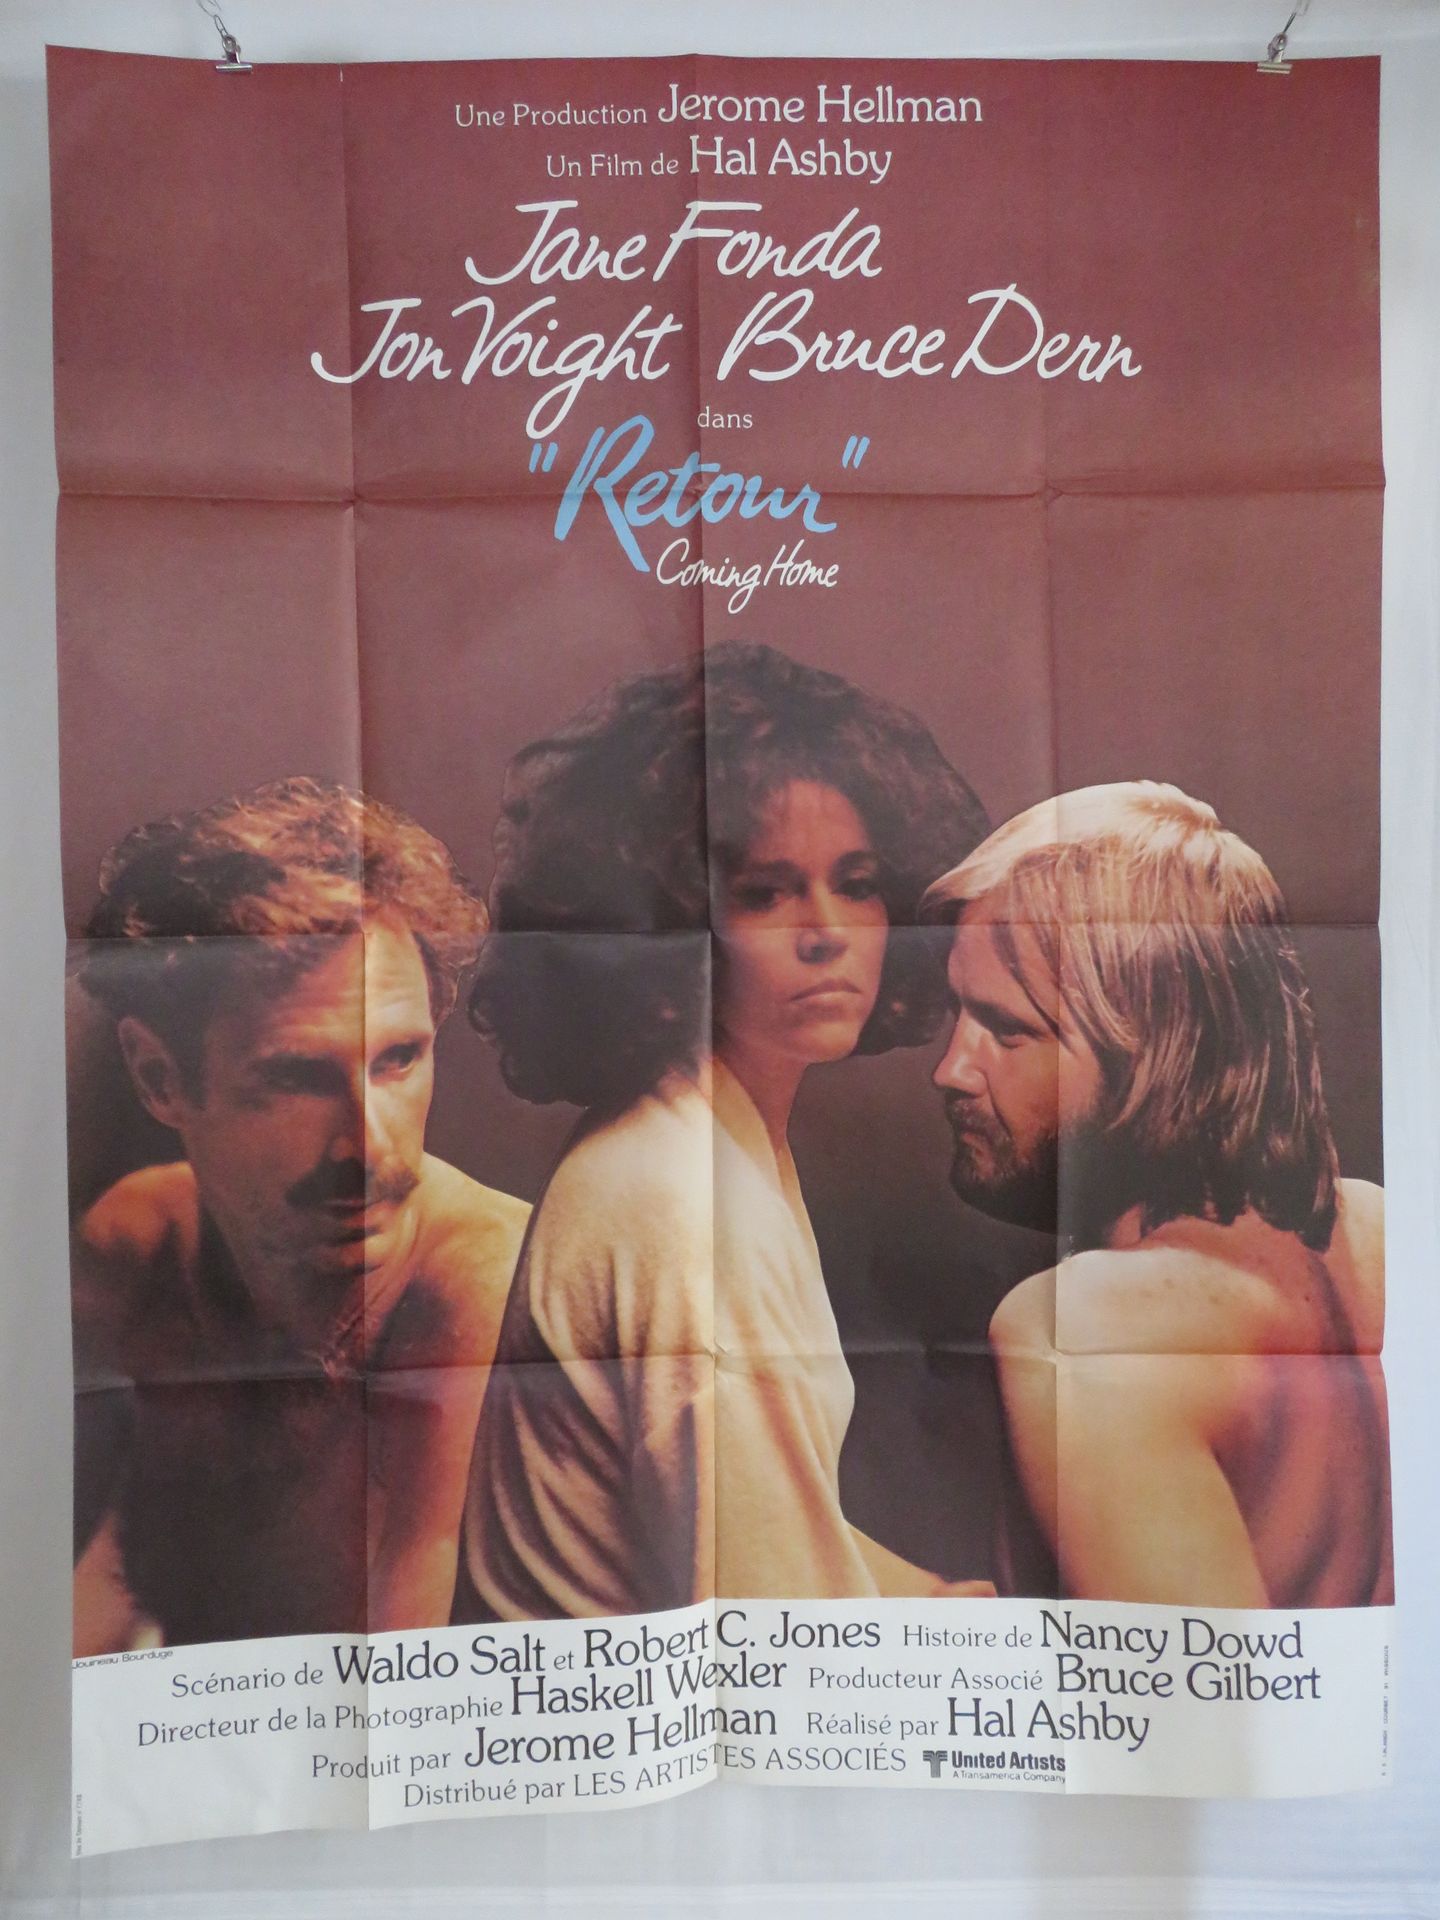 Null "RETOUR" (1978) von Hal ASHBY mit Jane Fonda, Jon Voight, Bruce Dern, Rober&hellip;